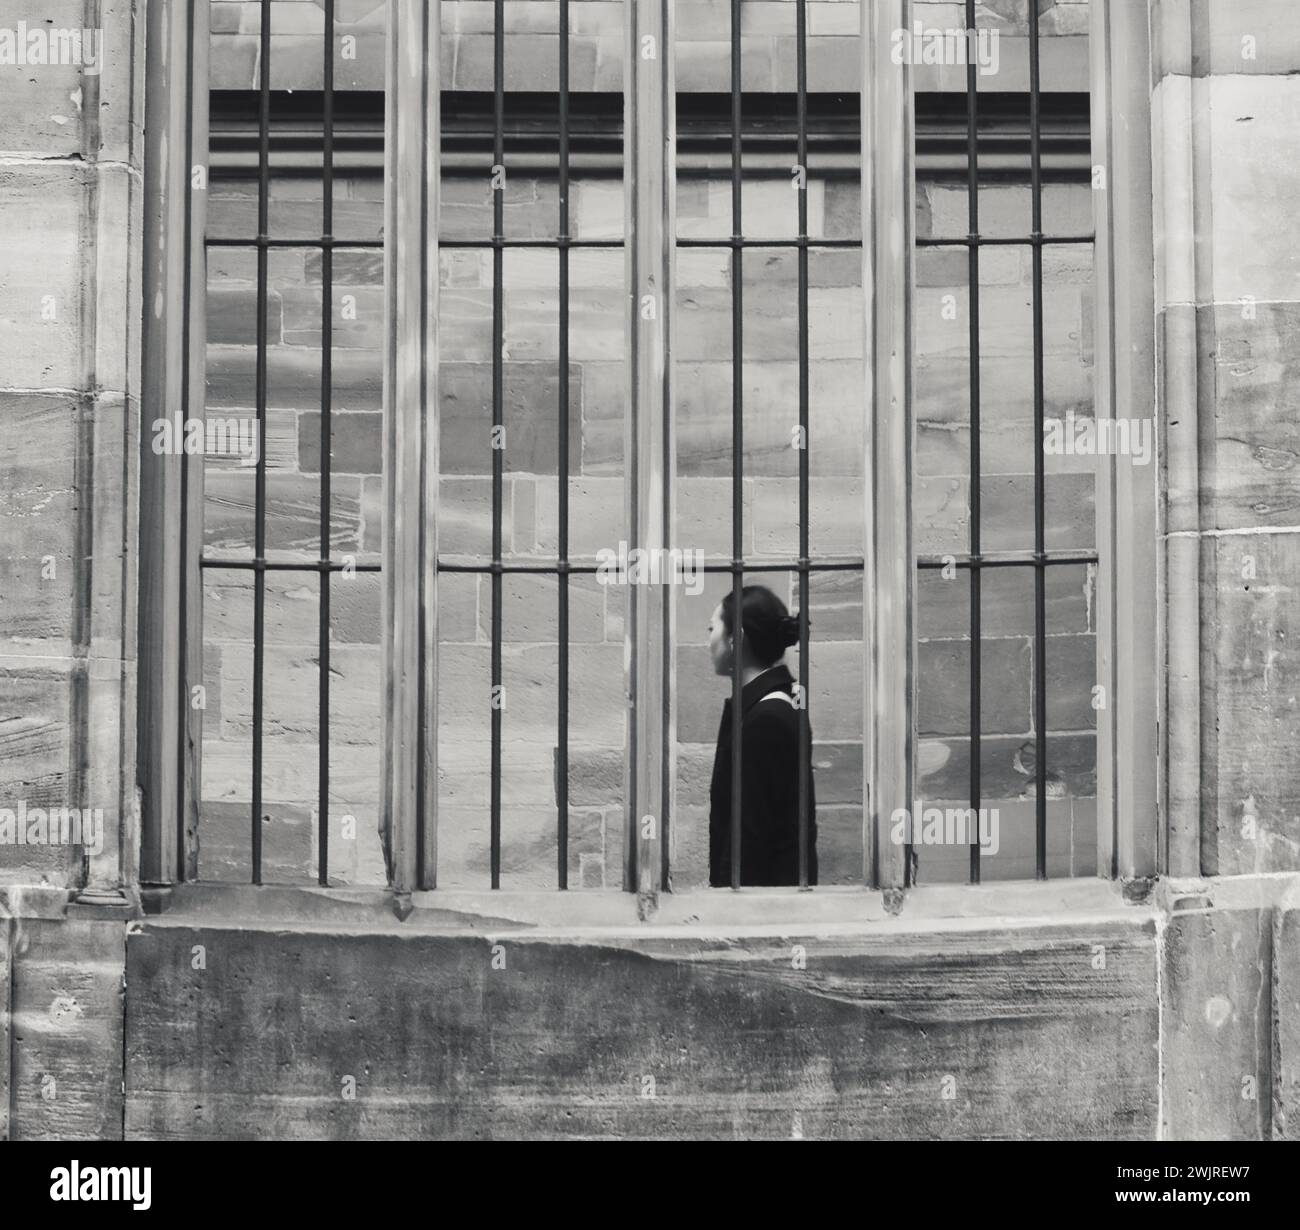 Strasburgo Francia 12.22.24 donne asiatiche stanno, guardando lontano, dietro una finestra barrata. Edificio in pietra. Capelli corti legati. Lungo cappotto nero. Posa solenne. IR Foto Stock